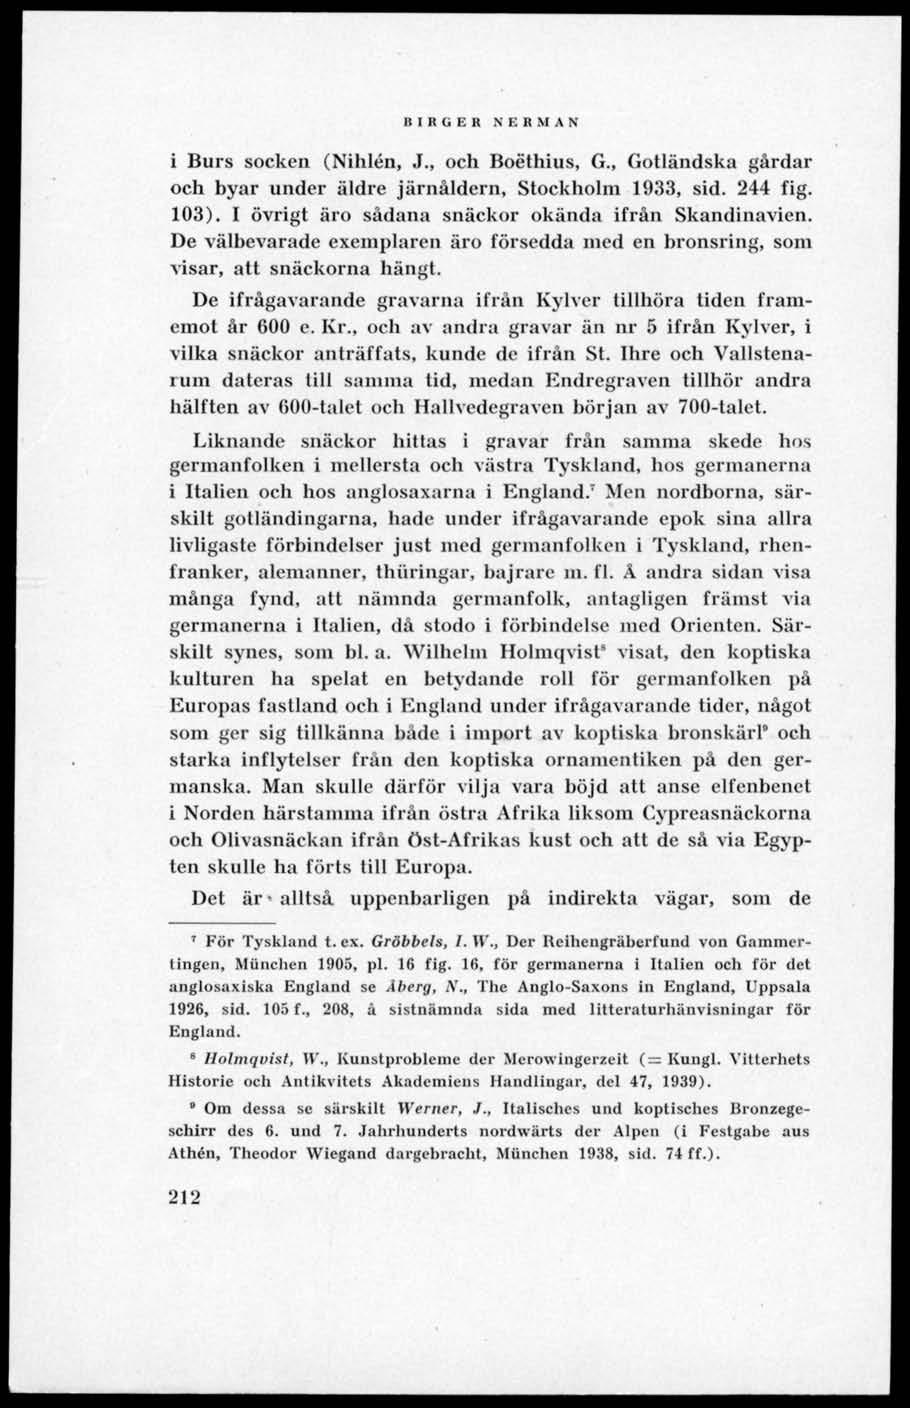 BIRGER NERMAN i Burs socken (Nihlén, J., och Boéthius, G., Gotländska gårdar och byar under äldre järnåldern, Stockholm 1933, sid. 244 fig. 103). I övrigt äro sådana snäckor okända ifrån Skandinavien.